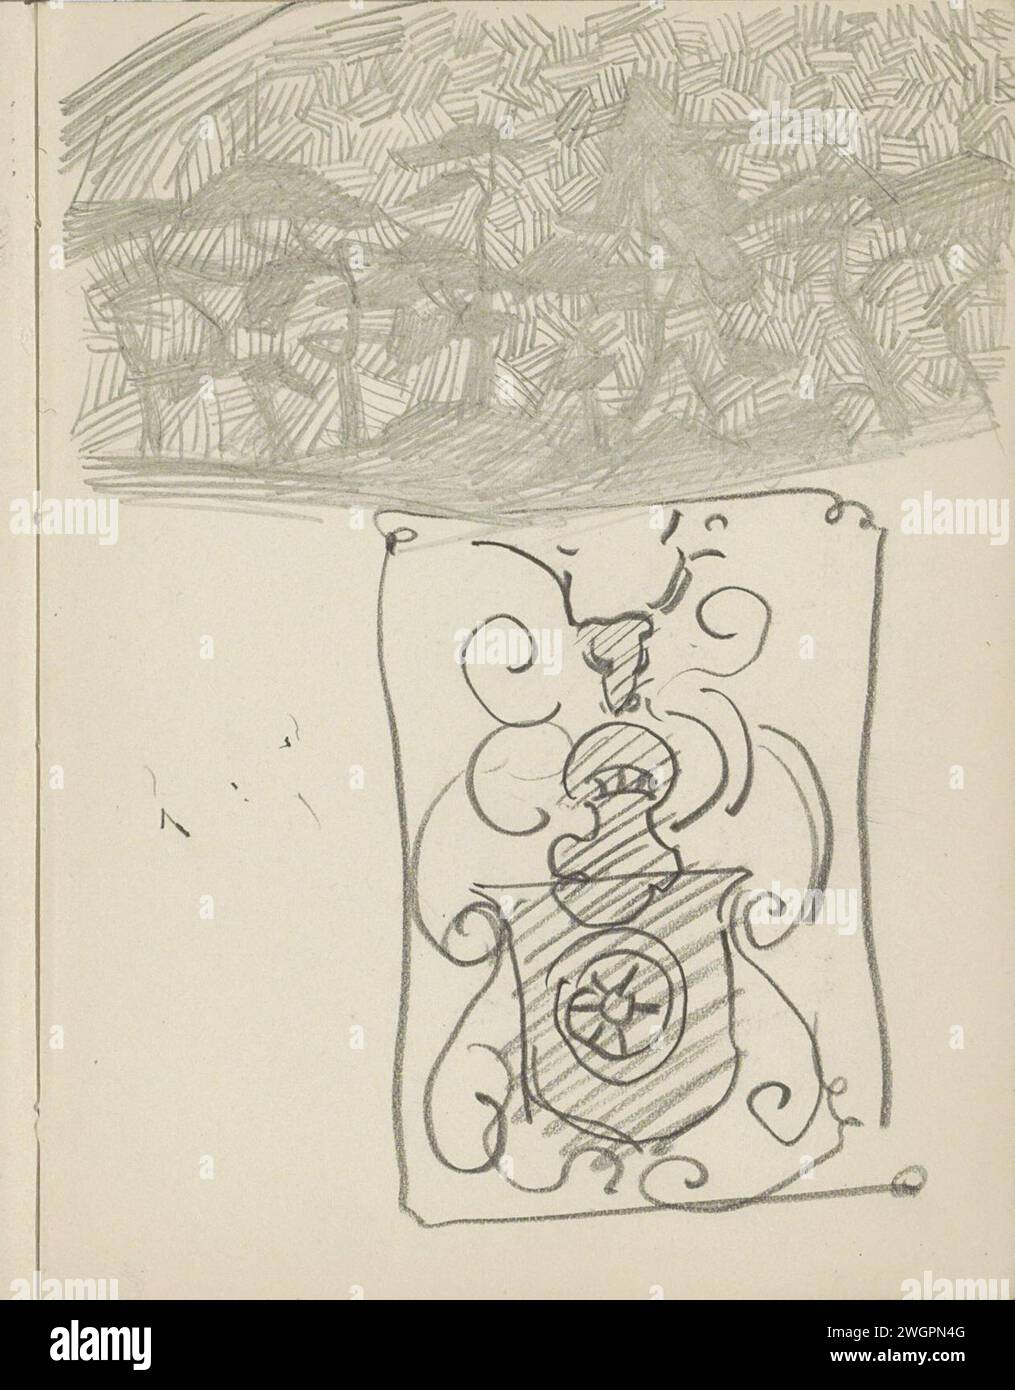 Landschaft mit Bäumen und einem Ornament, 1906 - 1945 Seite 18 Recto aus einem Skizzenbuch mit 69 Blättern. Papier. Bleistift. Kreidebäume. Ornamente  Kunst Stockfoto